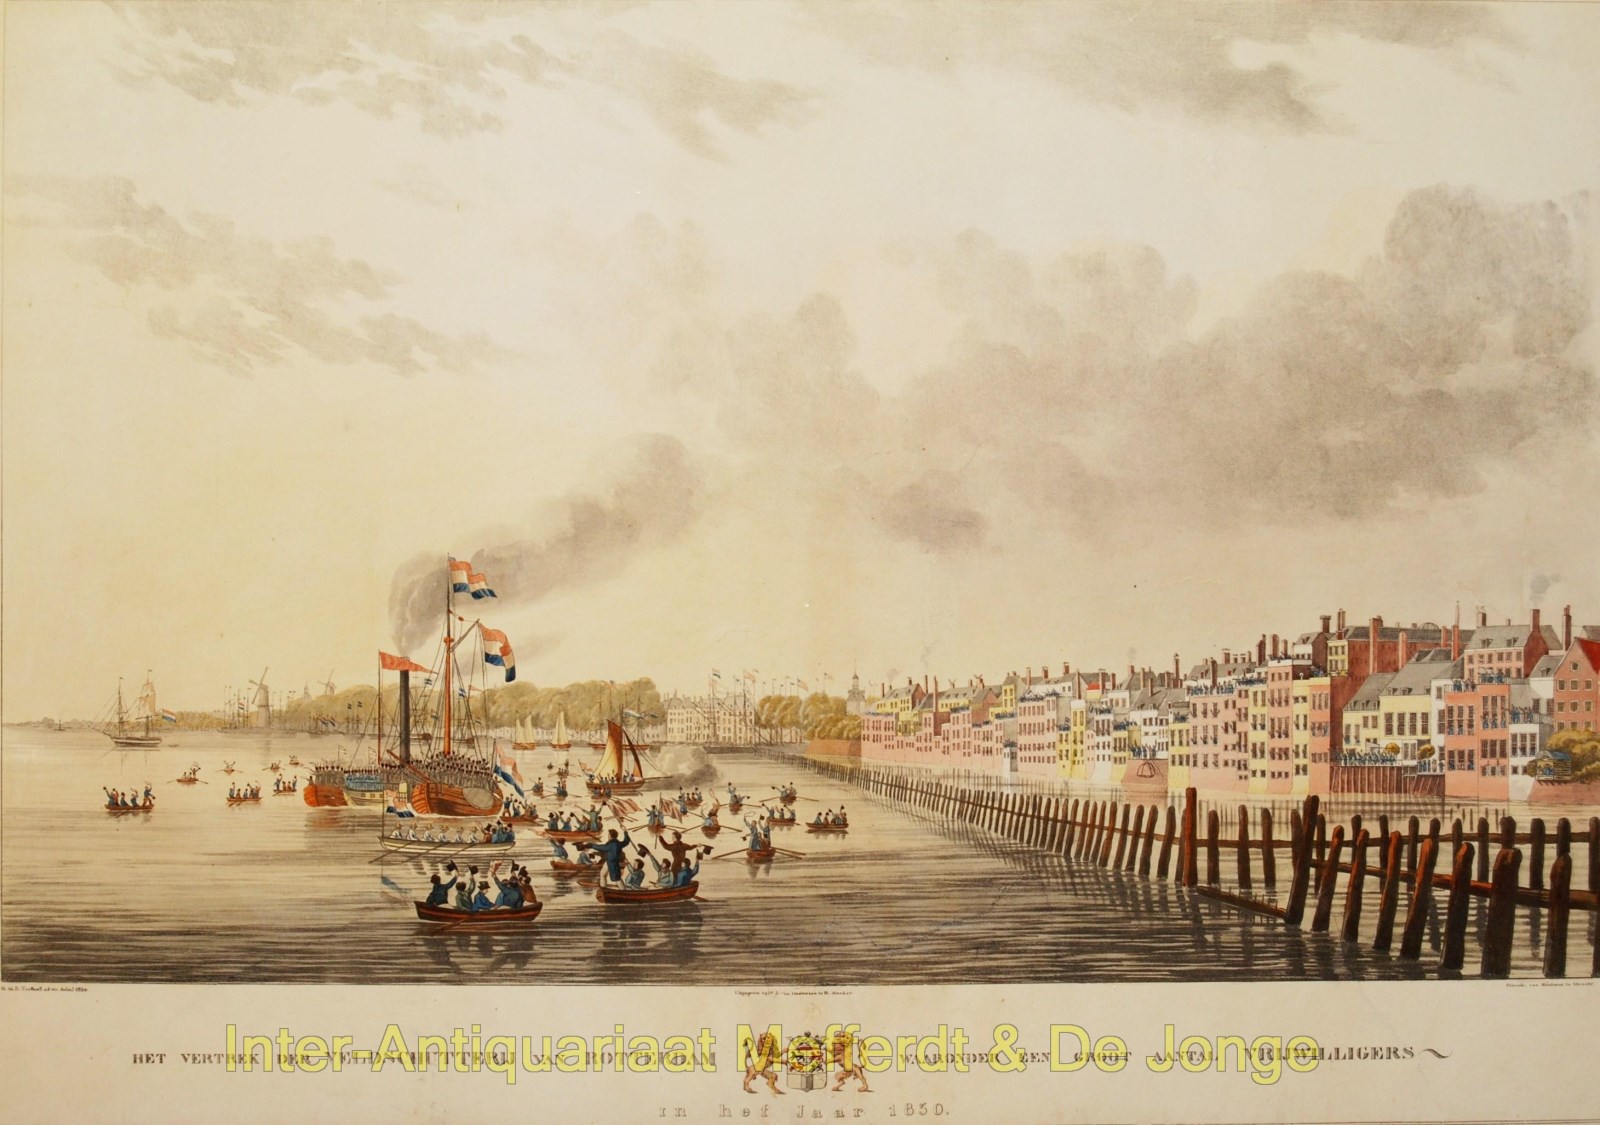 Oosterzee-- W.J. van - Rotterdam schutterij (city guard) - Q.M.R. Ver Huell, 1830